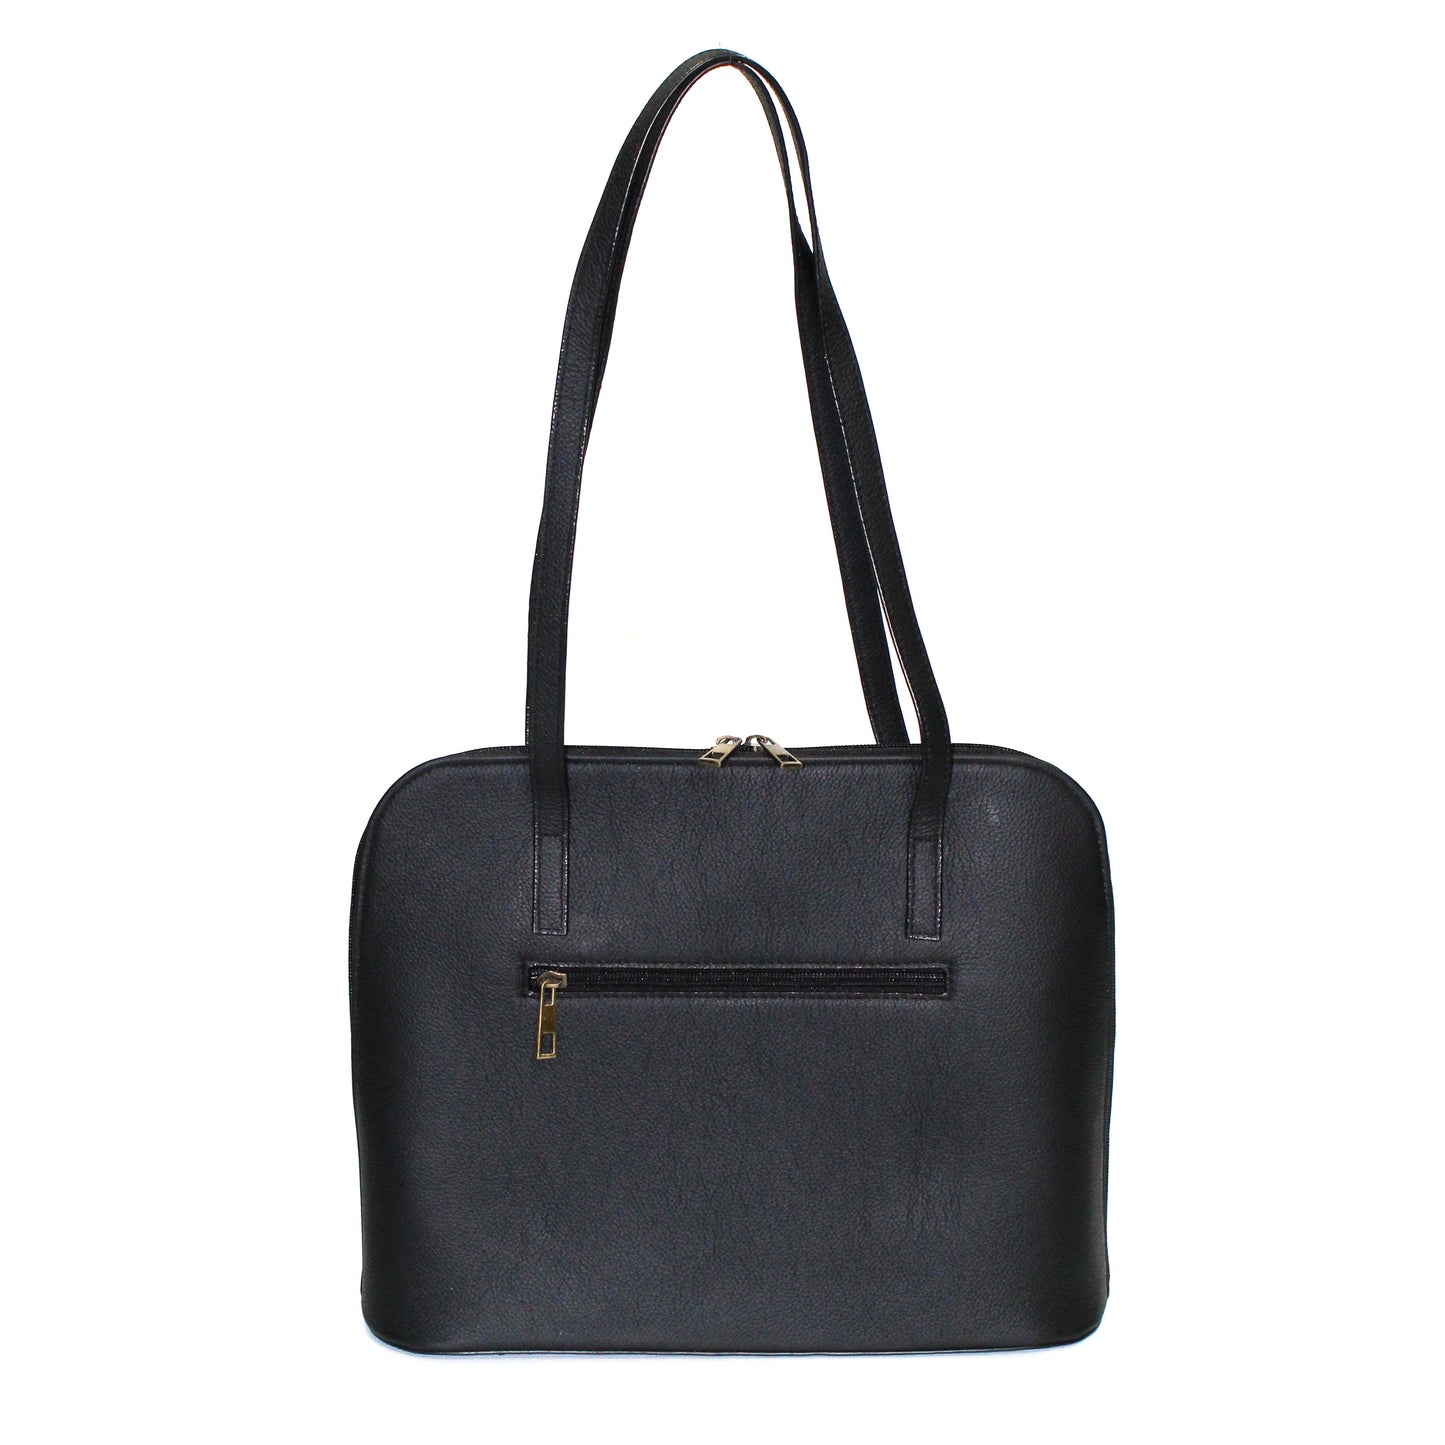 Pebbled Black Leather Handbag